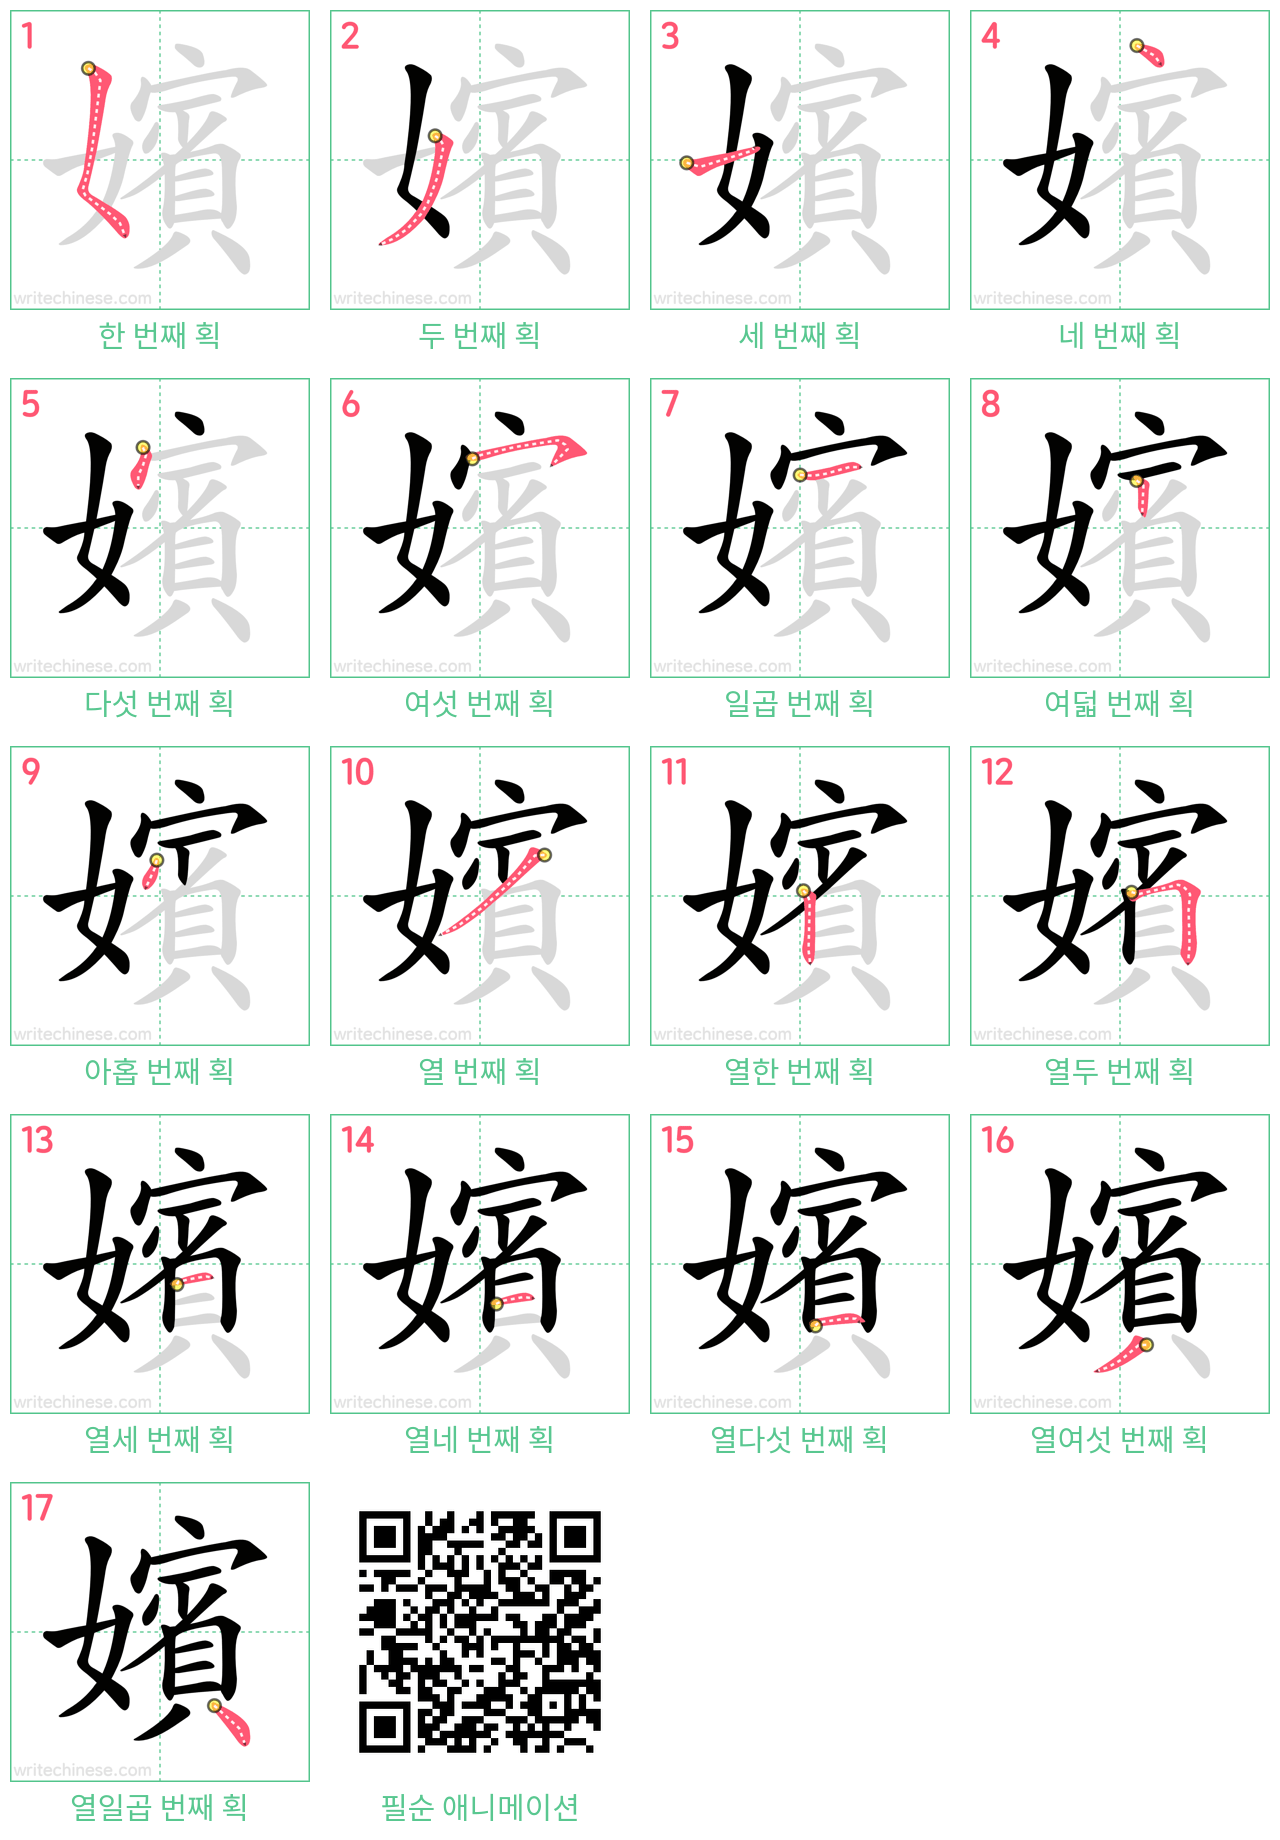 嬪 step-by-step stroke order diagrams